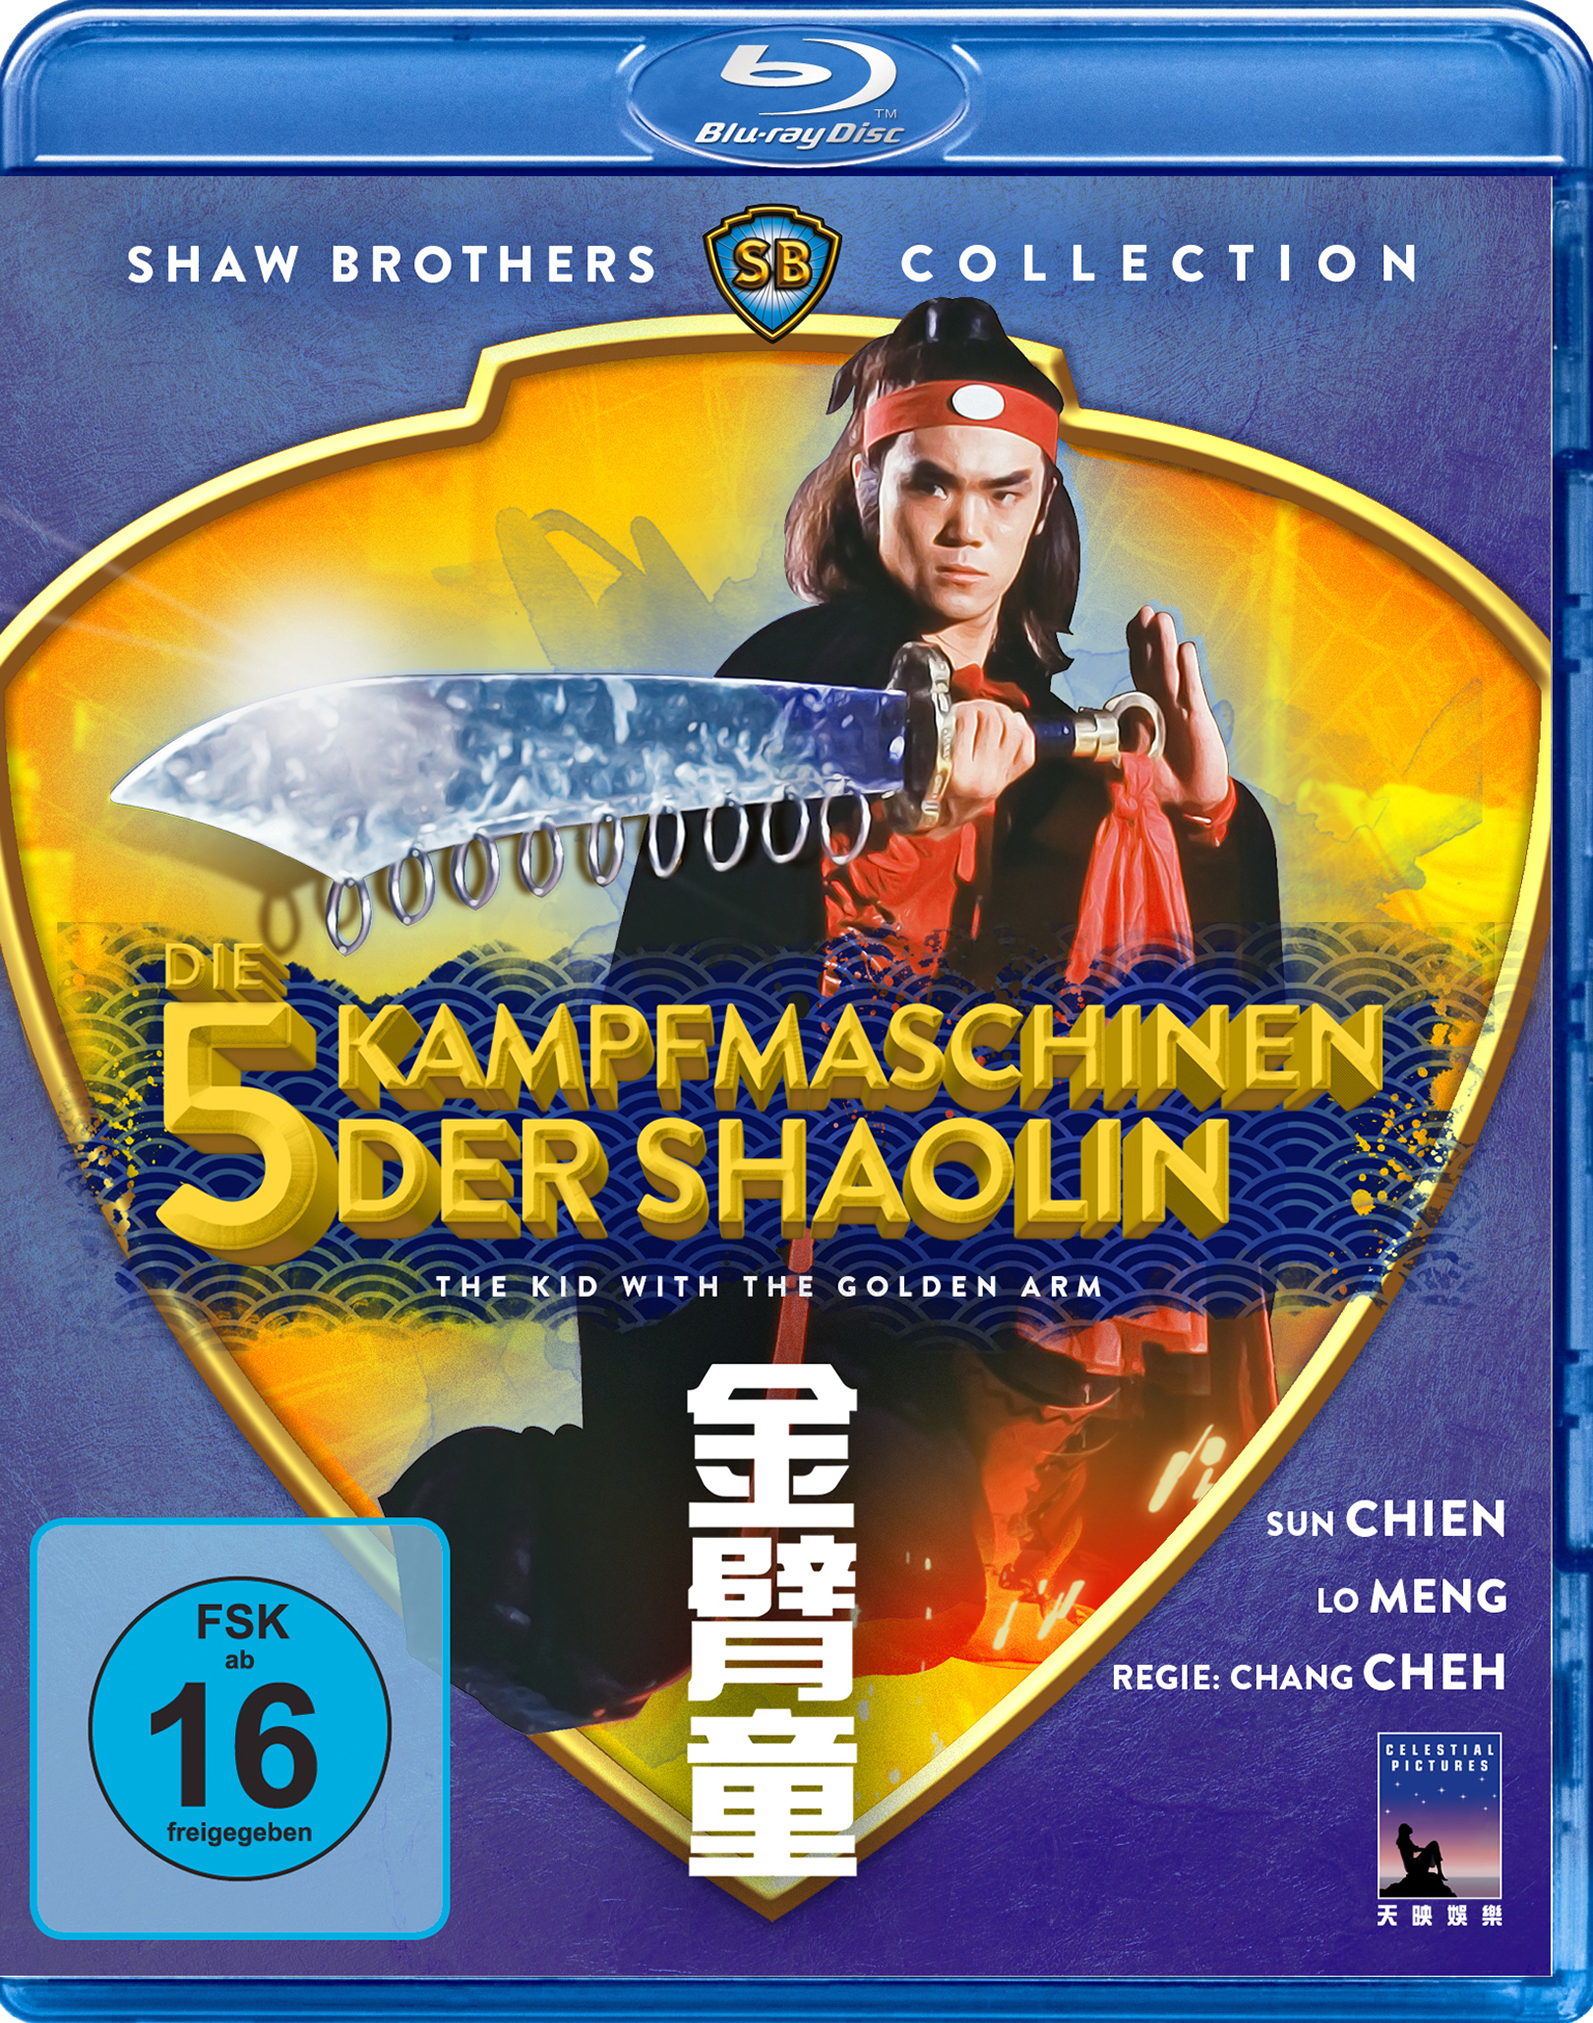 Die 5 Kampfmaschinen der Arm Blu-ray The With The Kid Golden Shaolin 